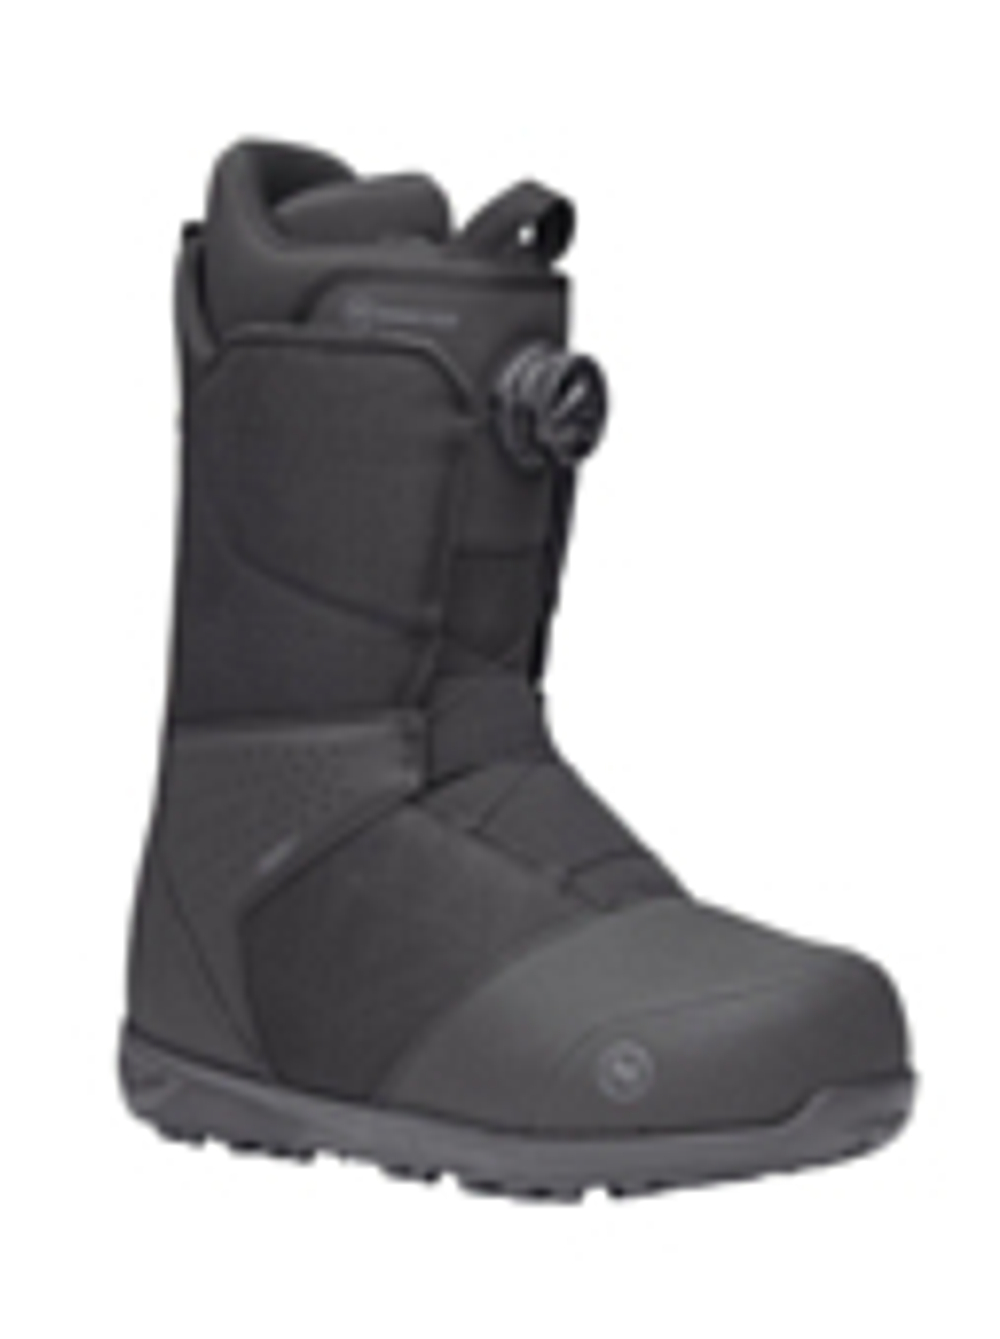 Ботинки для сноуборда NIDECKER 2023-24 Sierra Black (US:9,5)